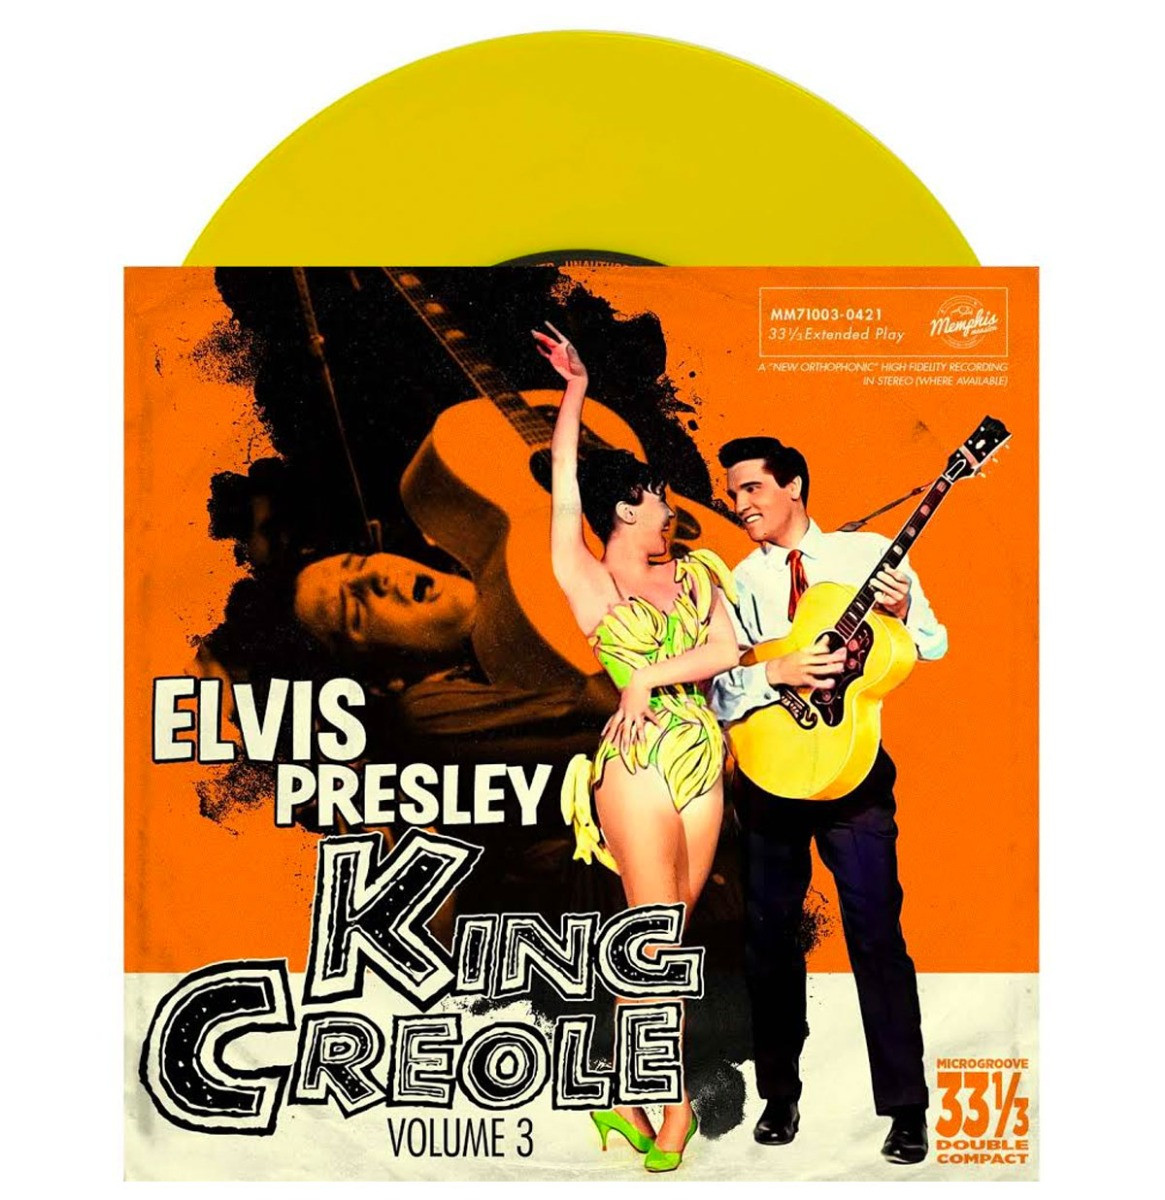 Elvis Presley - King Creole Volume 3 EP Geel Vinyl 33 1/3